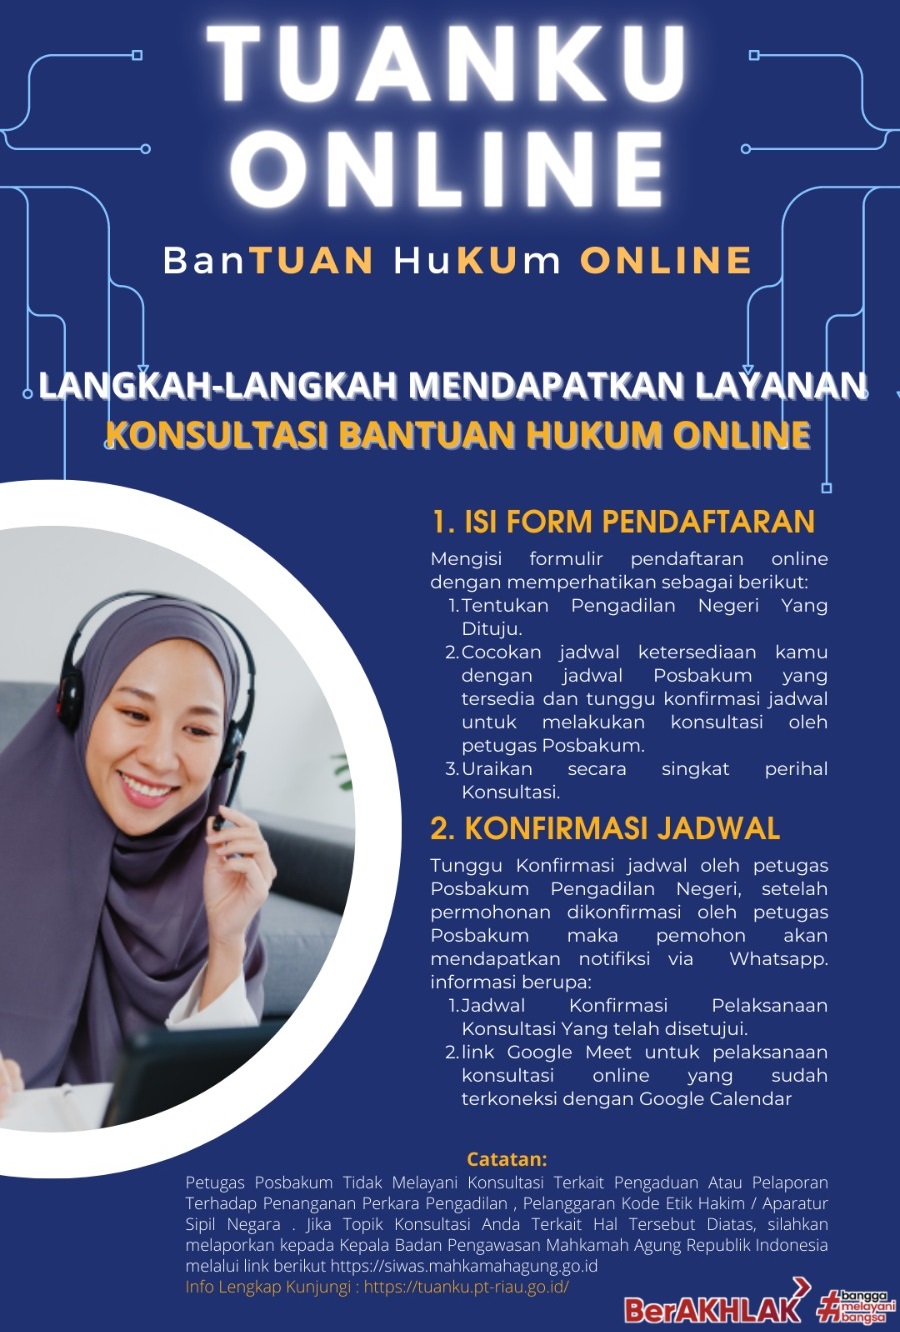 Tuanku Online adalah digitalisasi layanan hukum yang kami sediakan secara online